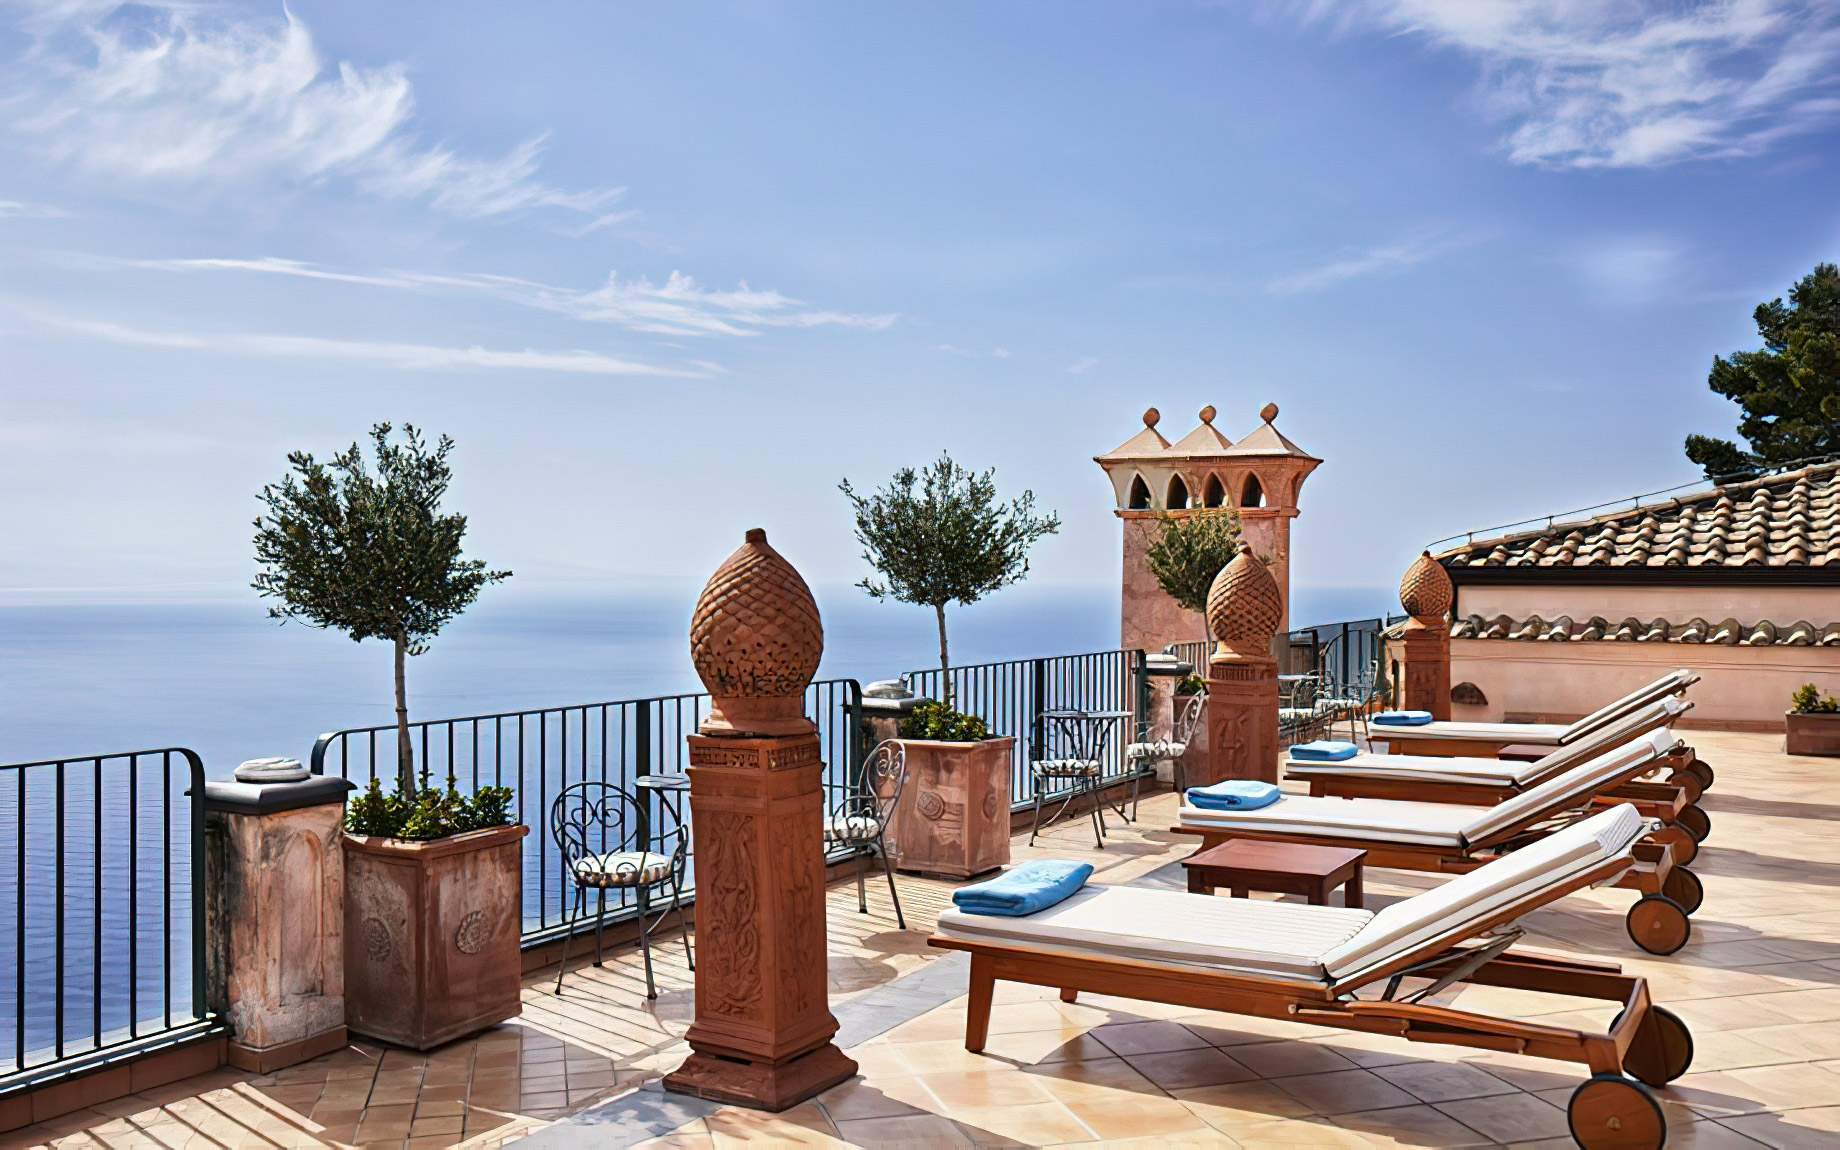 Palazzo Avino Hotel – Amalfi Coast, Ravello, Italy – Ocean View Terrace